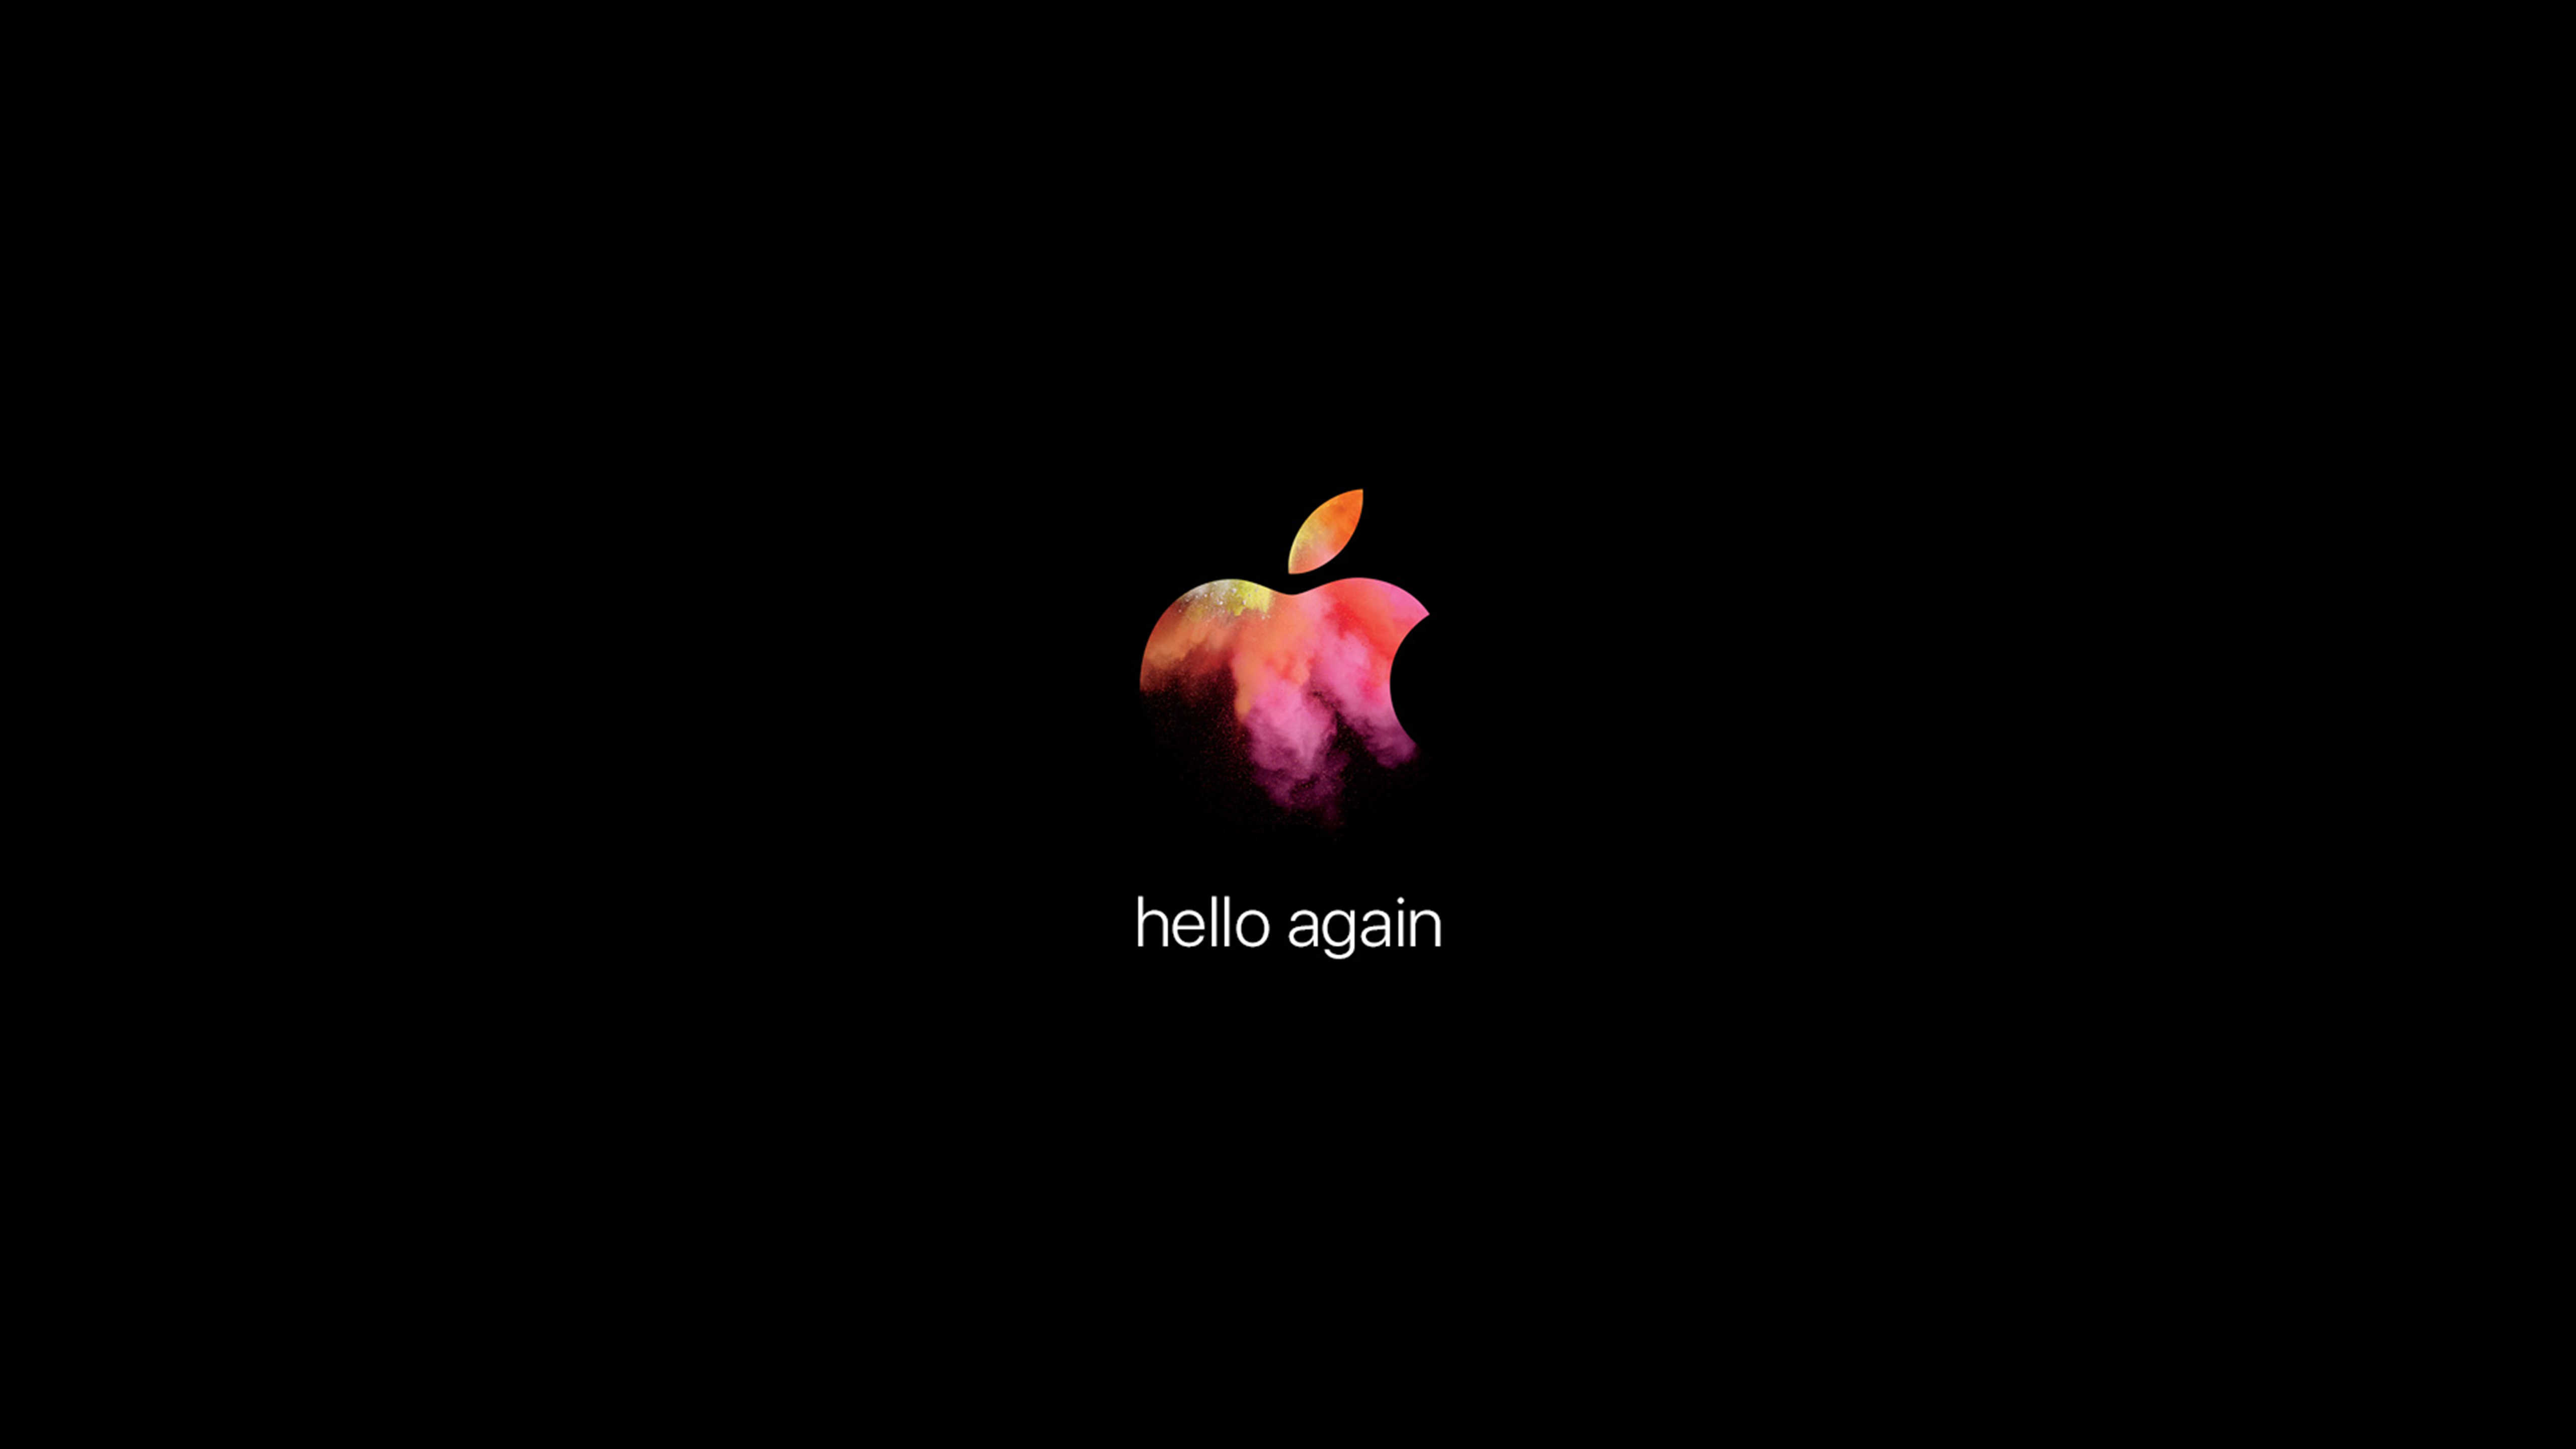 Hello again 27 iMac